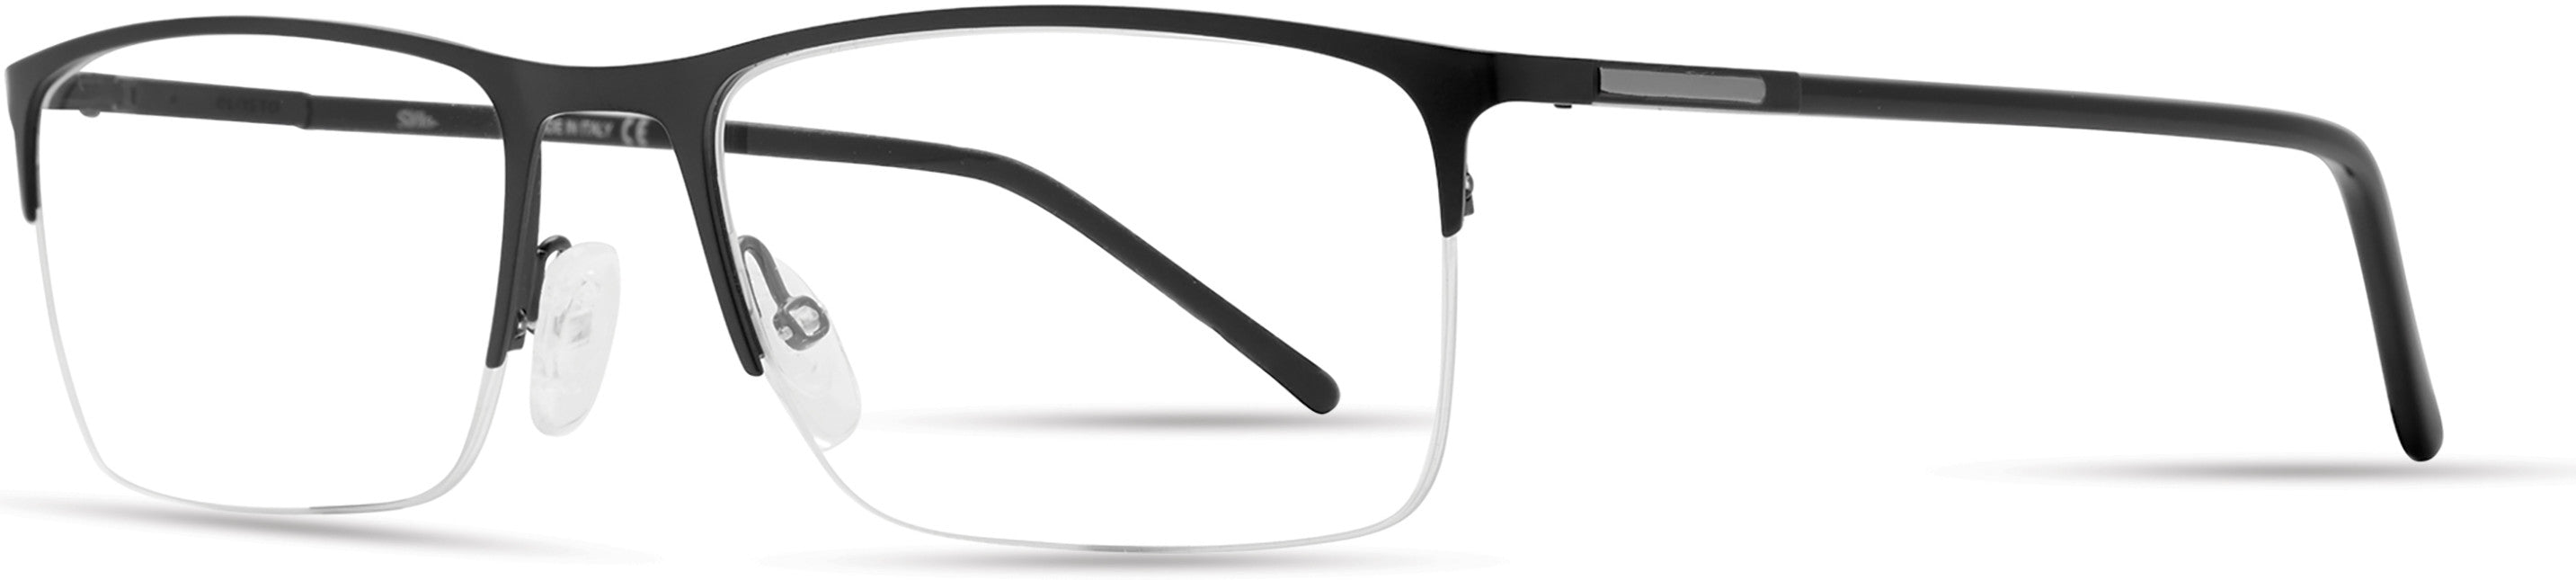  Elasta 7233 Rectangular Eyeglasses 0003-0003  Matte Black (00 Demo Lens)